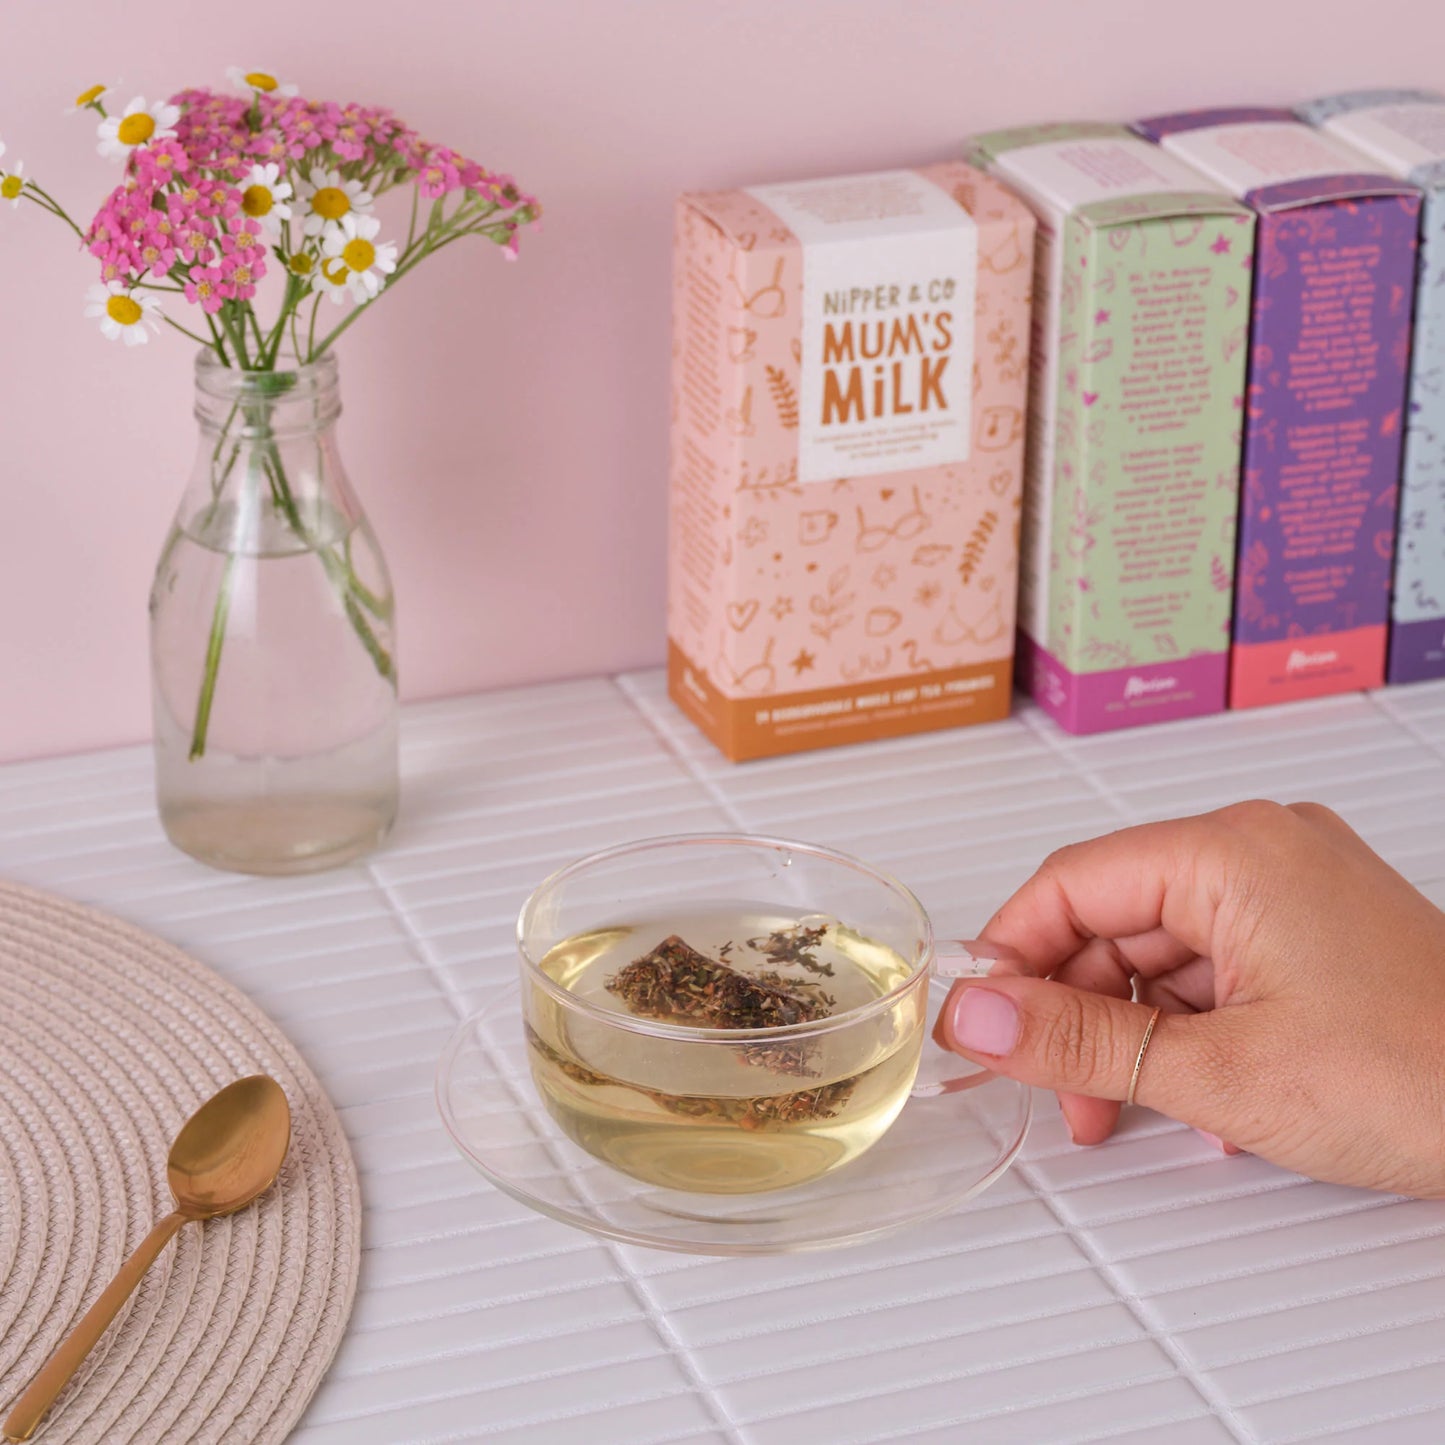 Nipper & Co. Mums Milk Lactation Tea